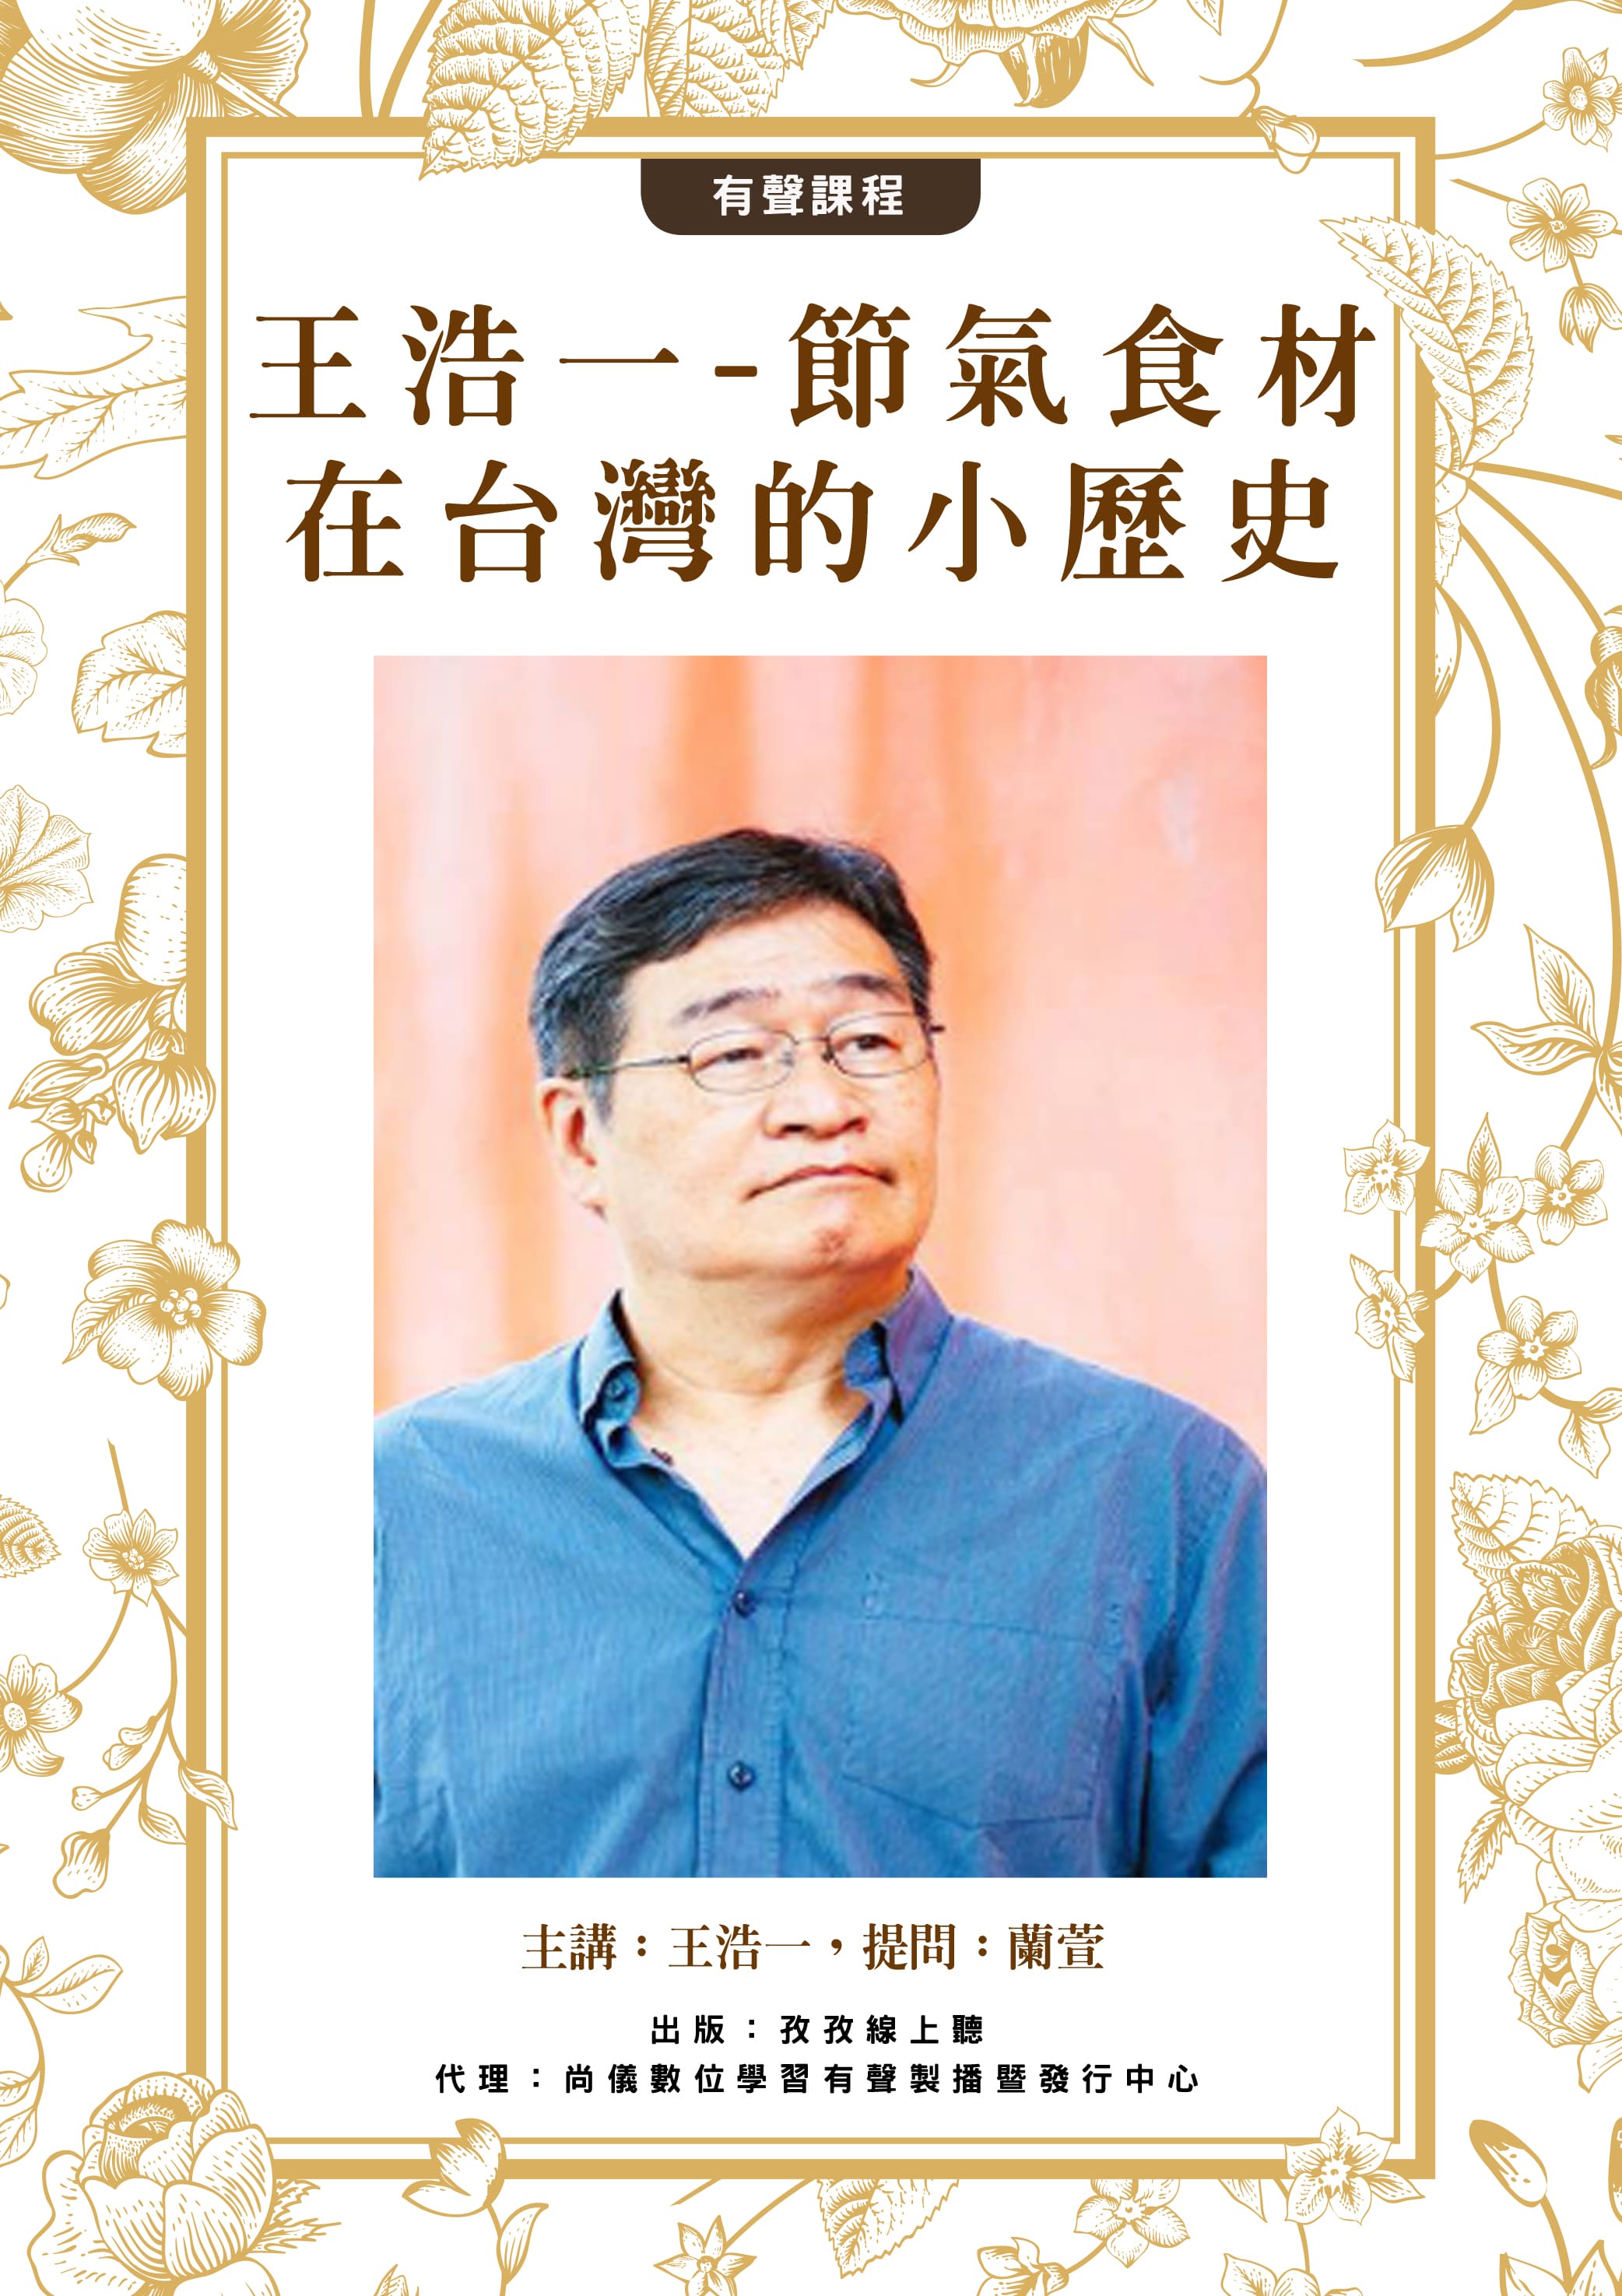 節氣食材在台灣的小歷史 -王浩一主講‧蘭萱提問封面圖